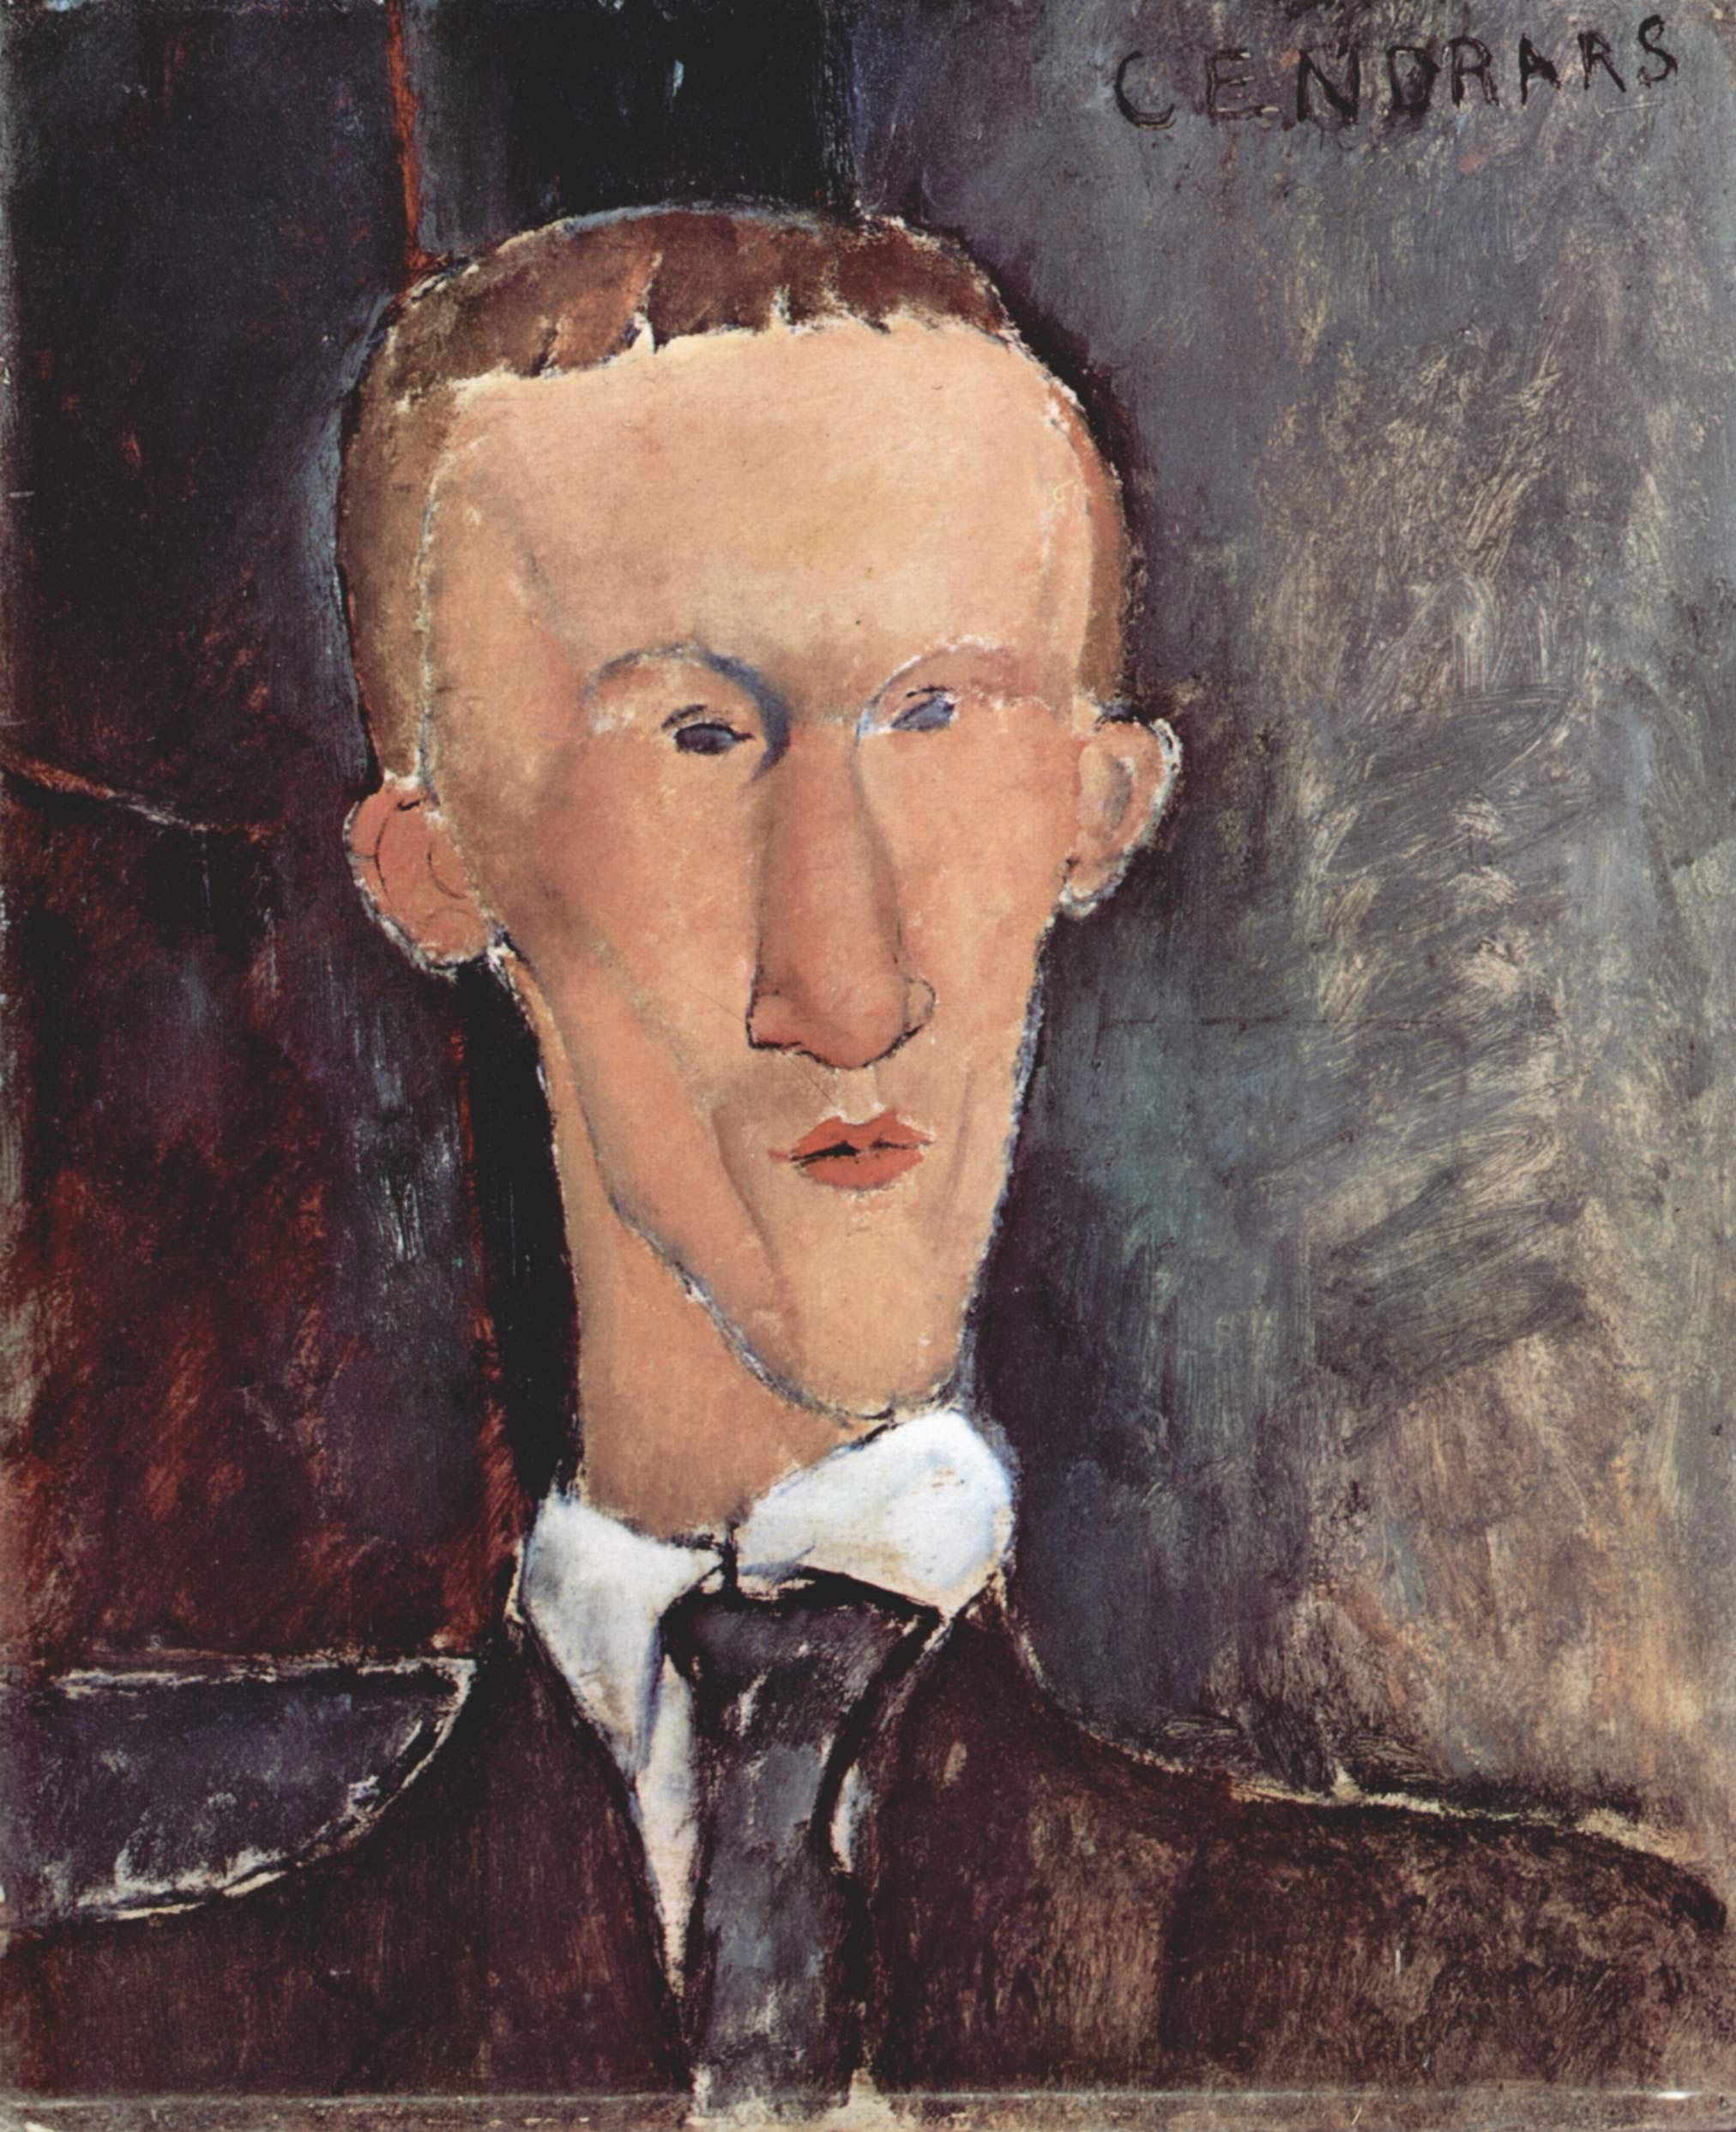 Portrait de Blaise Cendrars par Modigliani (1917). [DP]